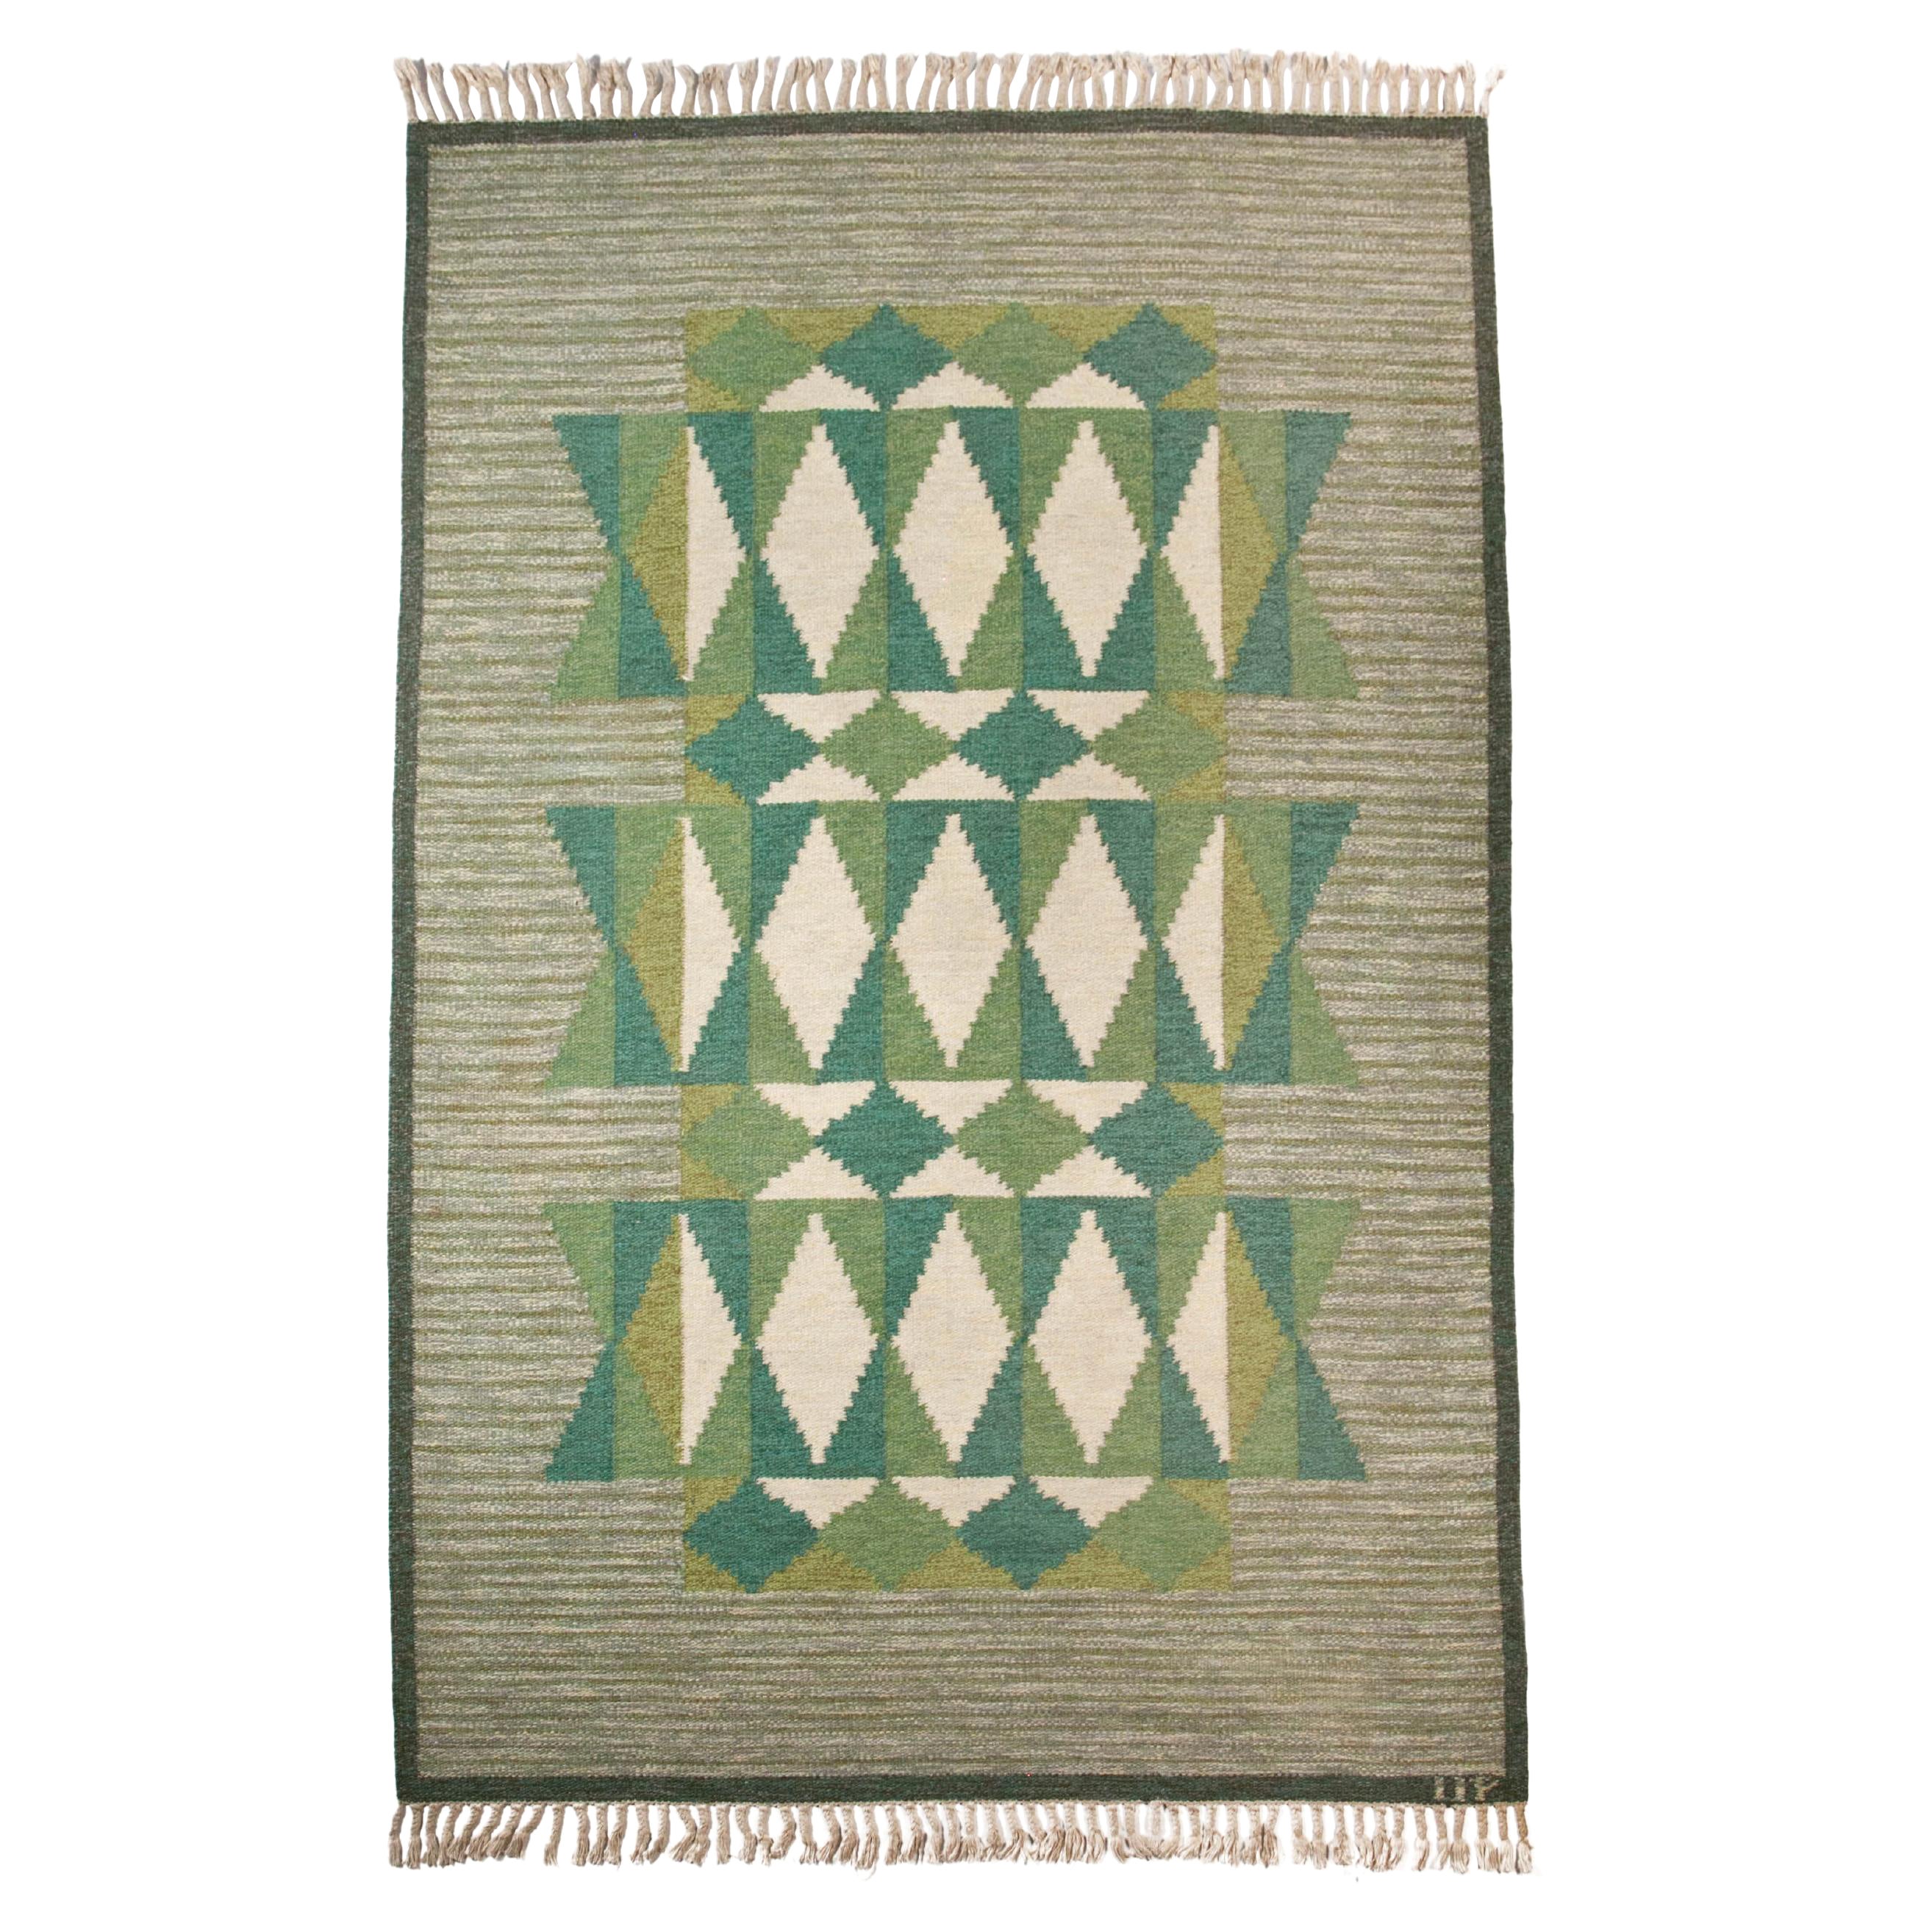 Ulla Parkdal - Swedish flat weave rug, Sweden 1960's - 94.5" x 61".